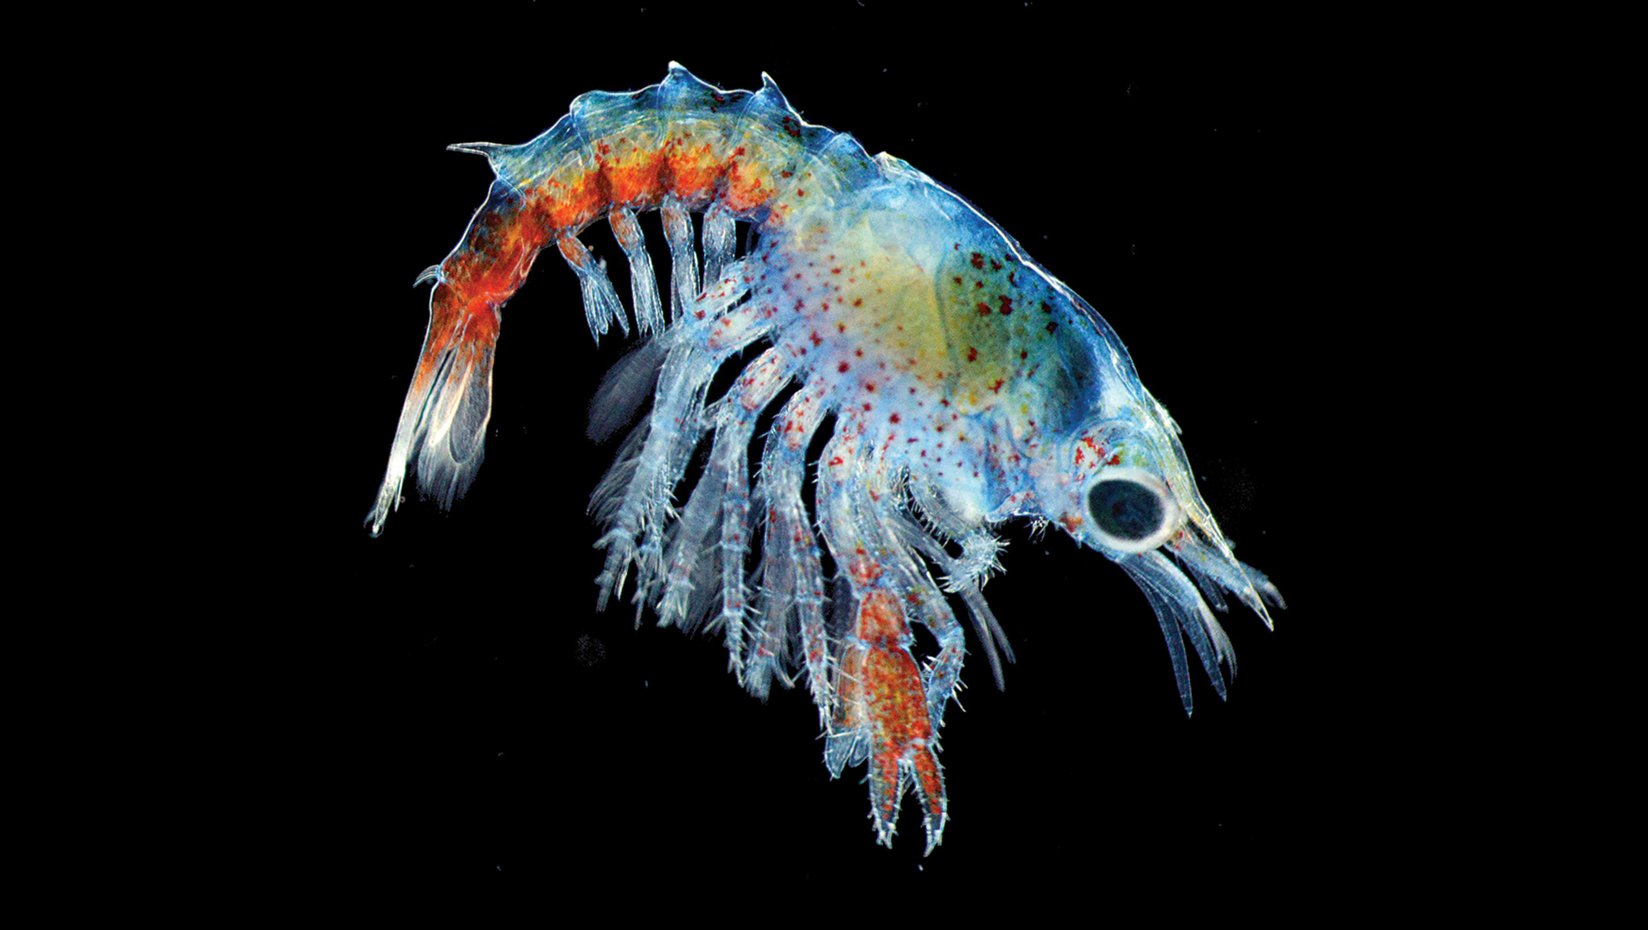 Lobster larva